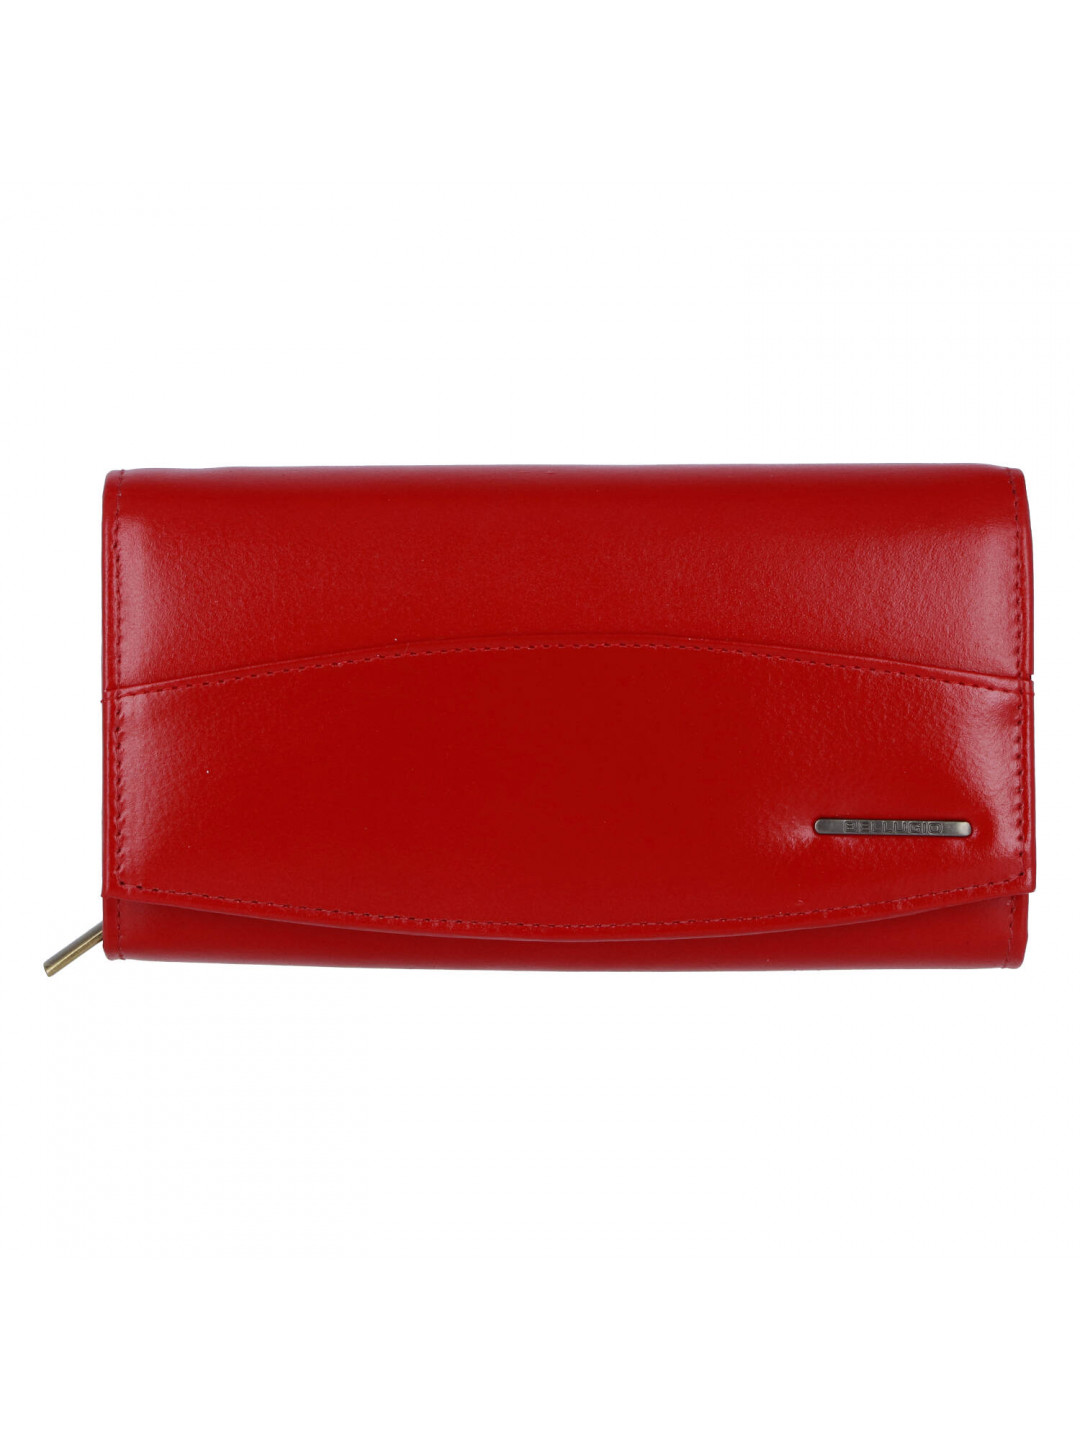 Dámská kožená peněženka Bellugio Lana červená